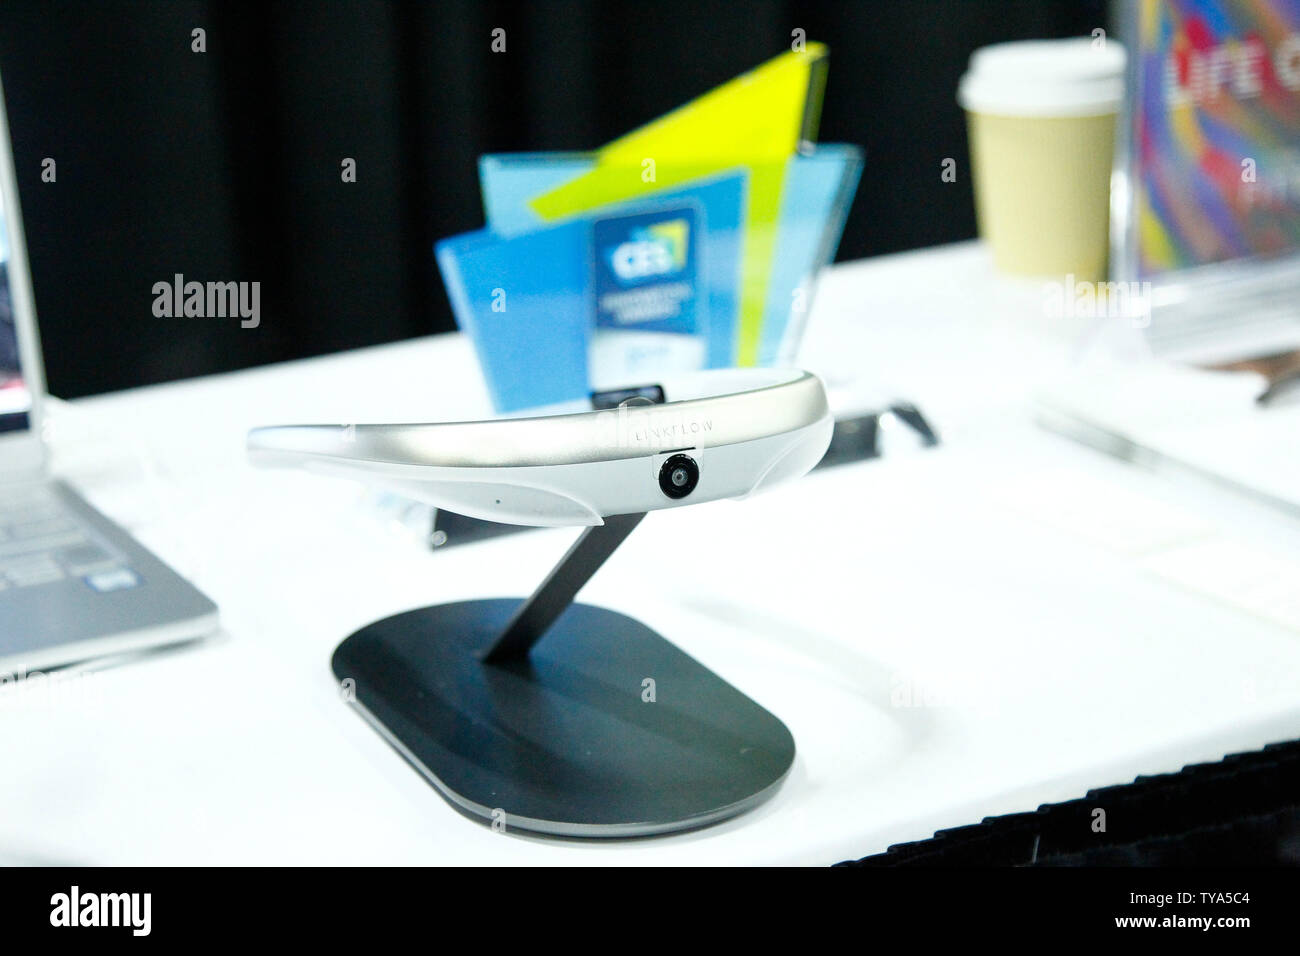 Le FITT360 par Linkflow, inc., le premier portable 360 appareil photo au cou de l'afficheur pendant le 'CES' dévoilé au cours de l'événement médiatique international CES 2019, au Mandalay Bay Convention Center de Las Vegas, Nevada, le 6 janvier 2019. Photo de James Atoa/UPI Banque D'Images